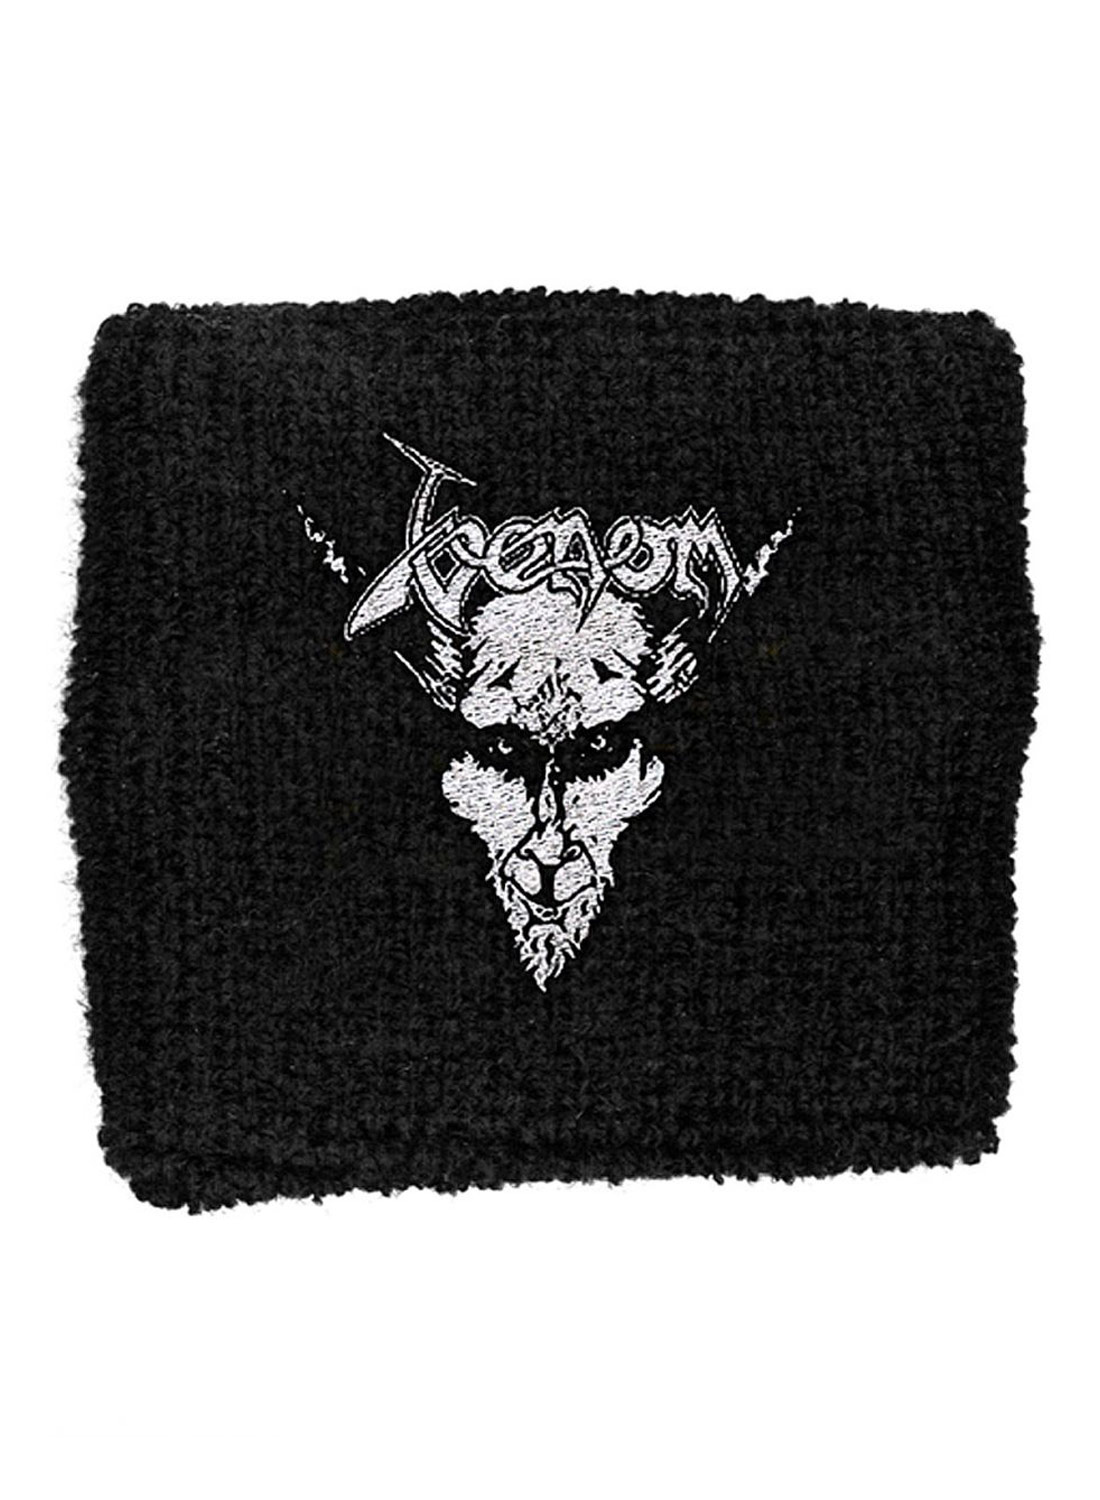 Venom Embroidered Sweatband